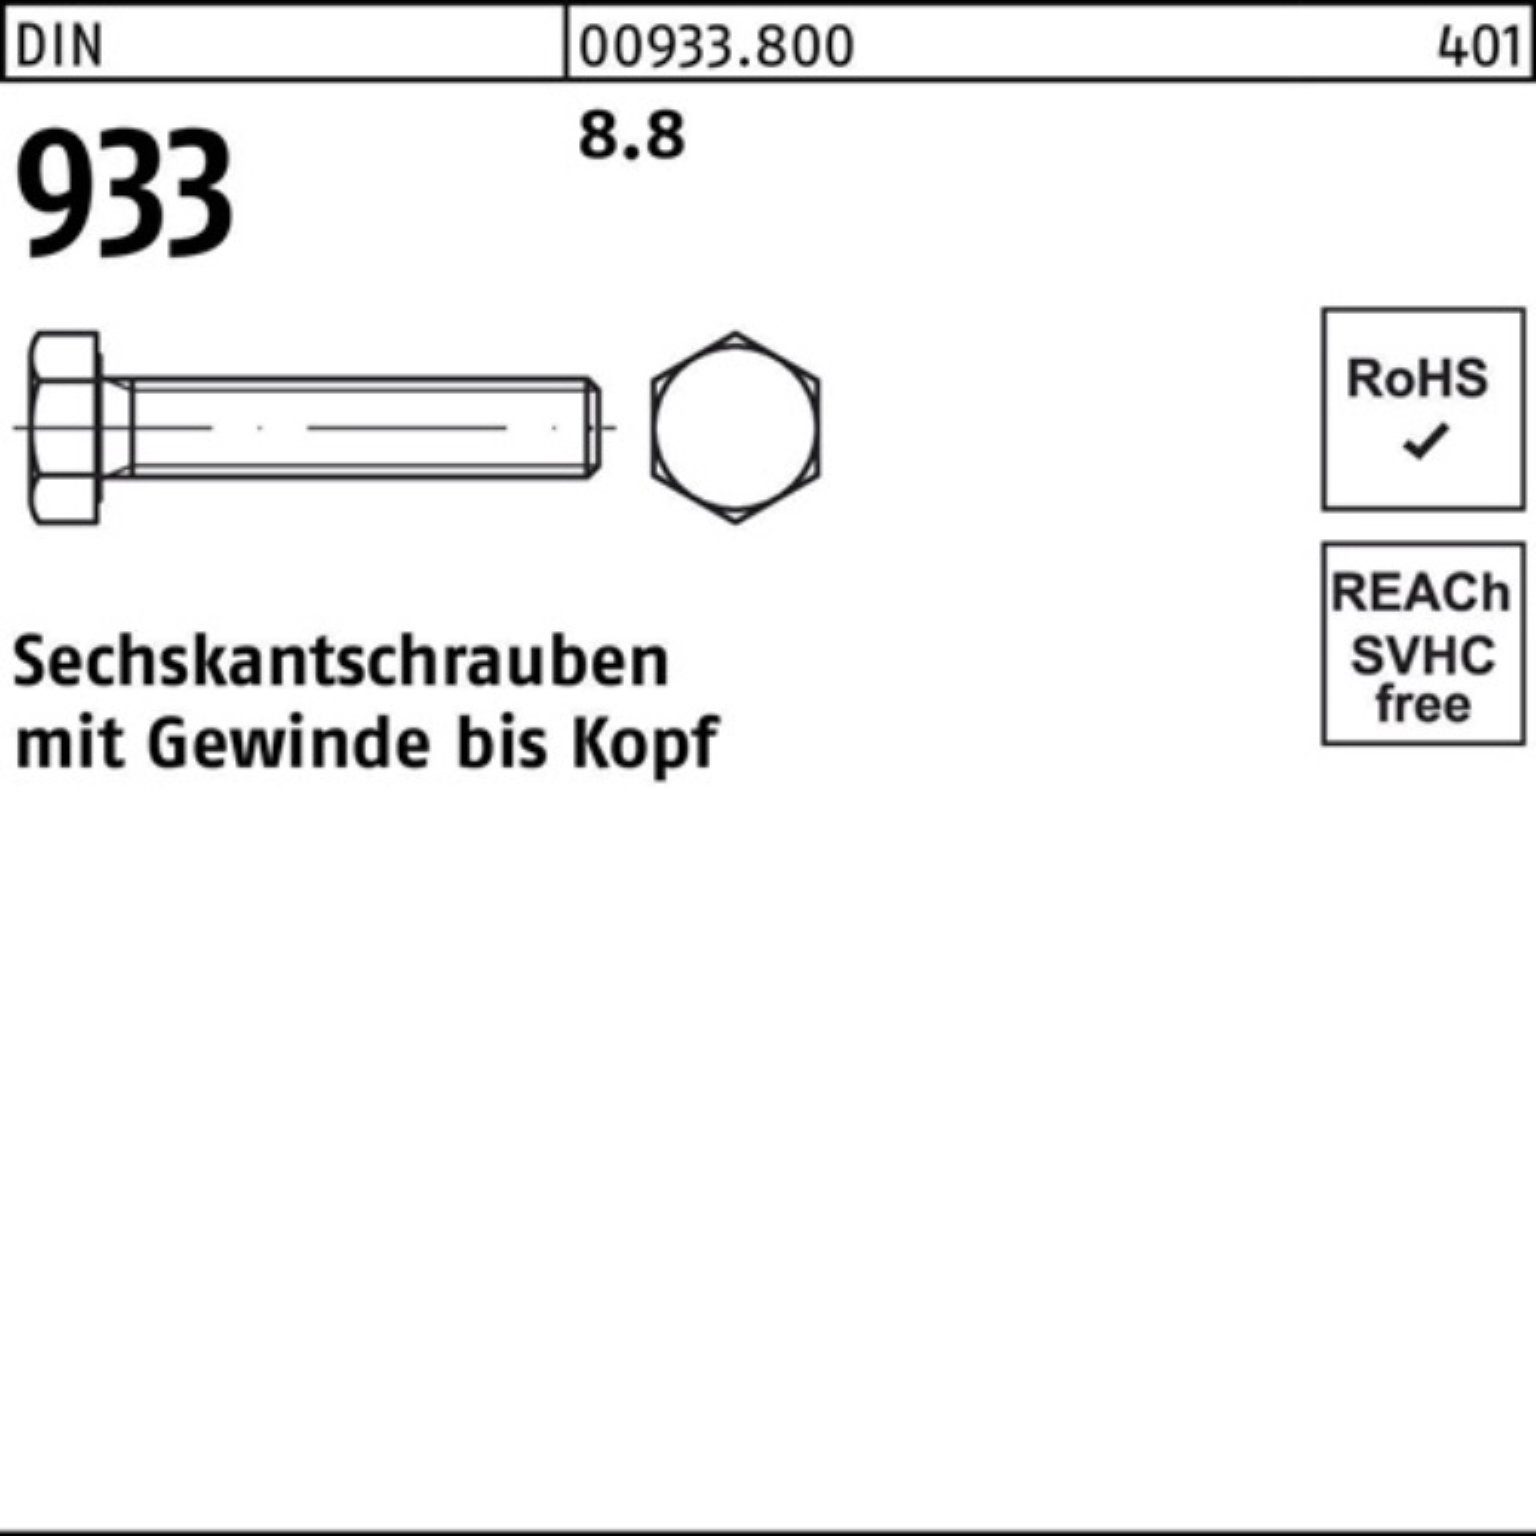 130 Sechskantschraube DIN 8.8 933 Sechskantschraube Reyher Stück Pack 100 VG DIN M8x 100er 933